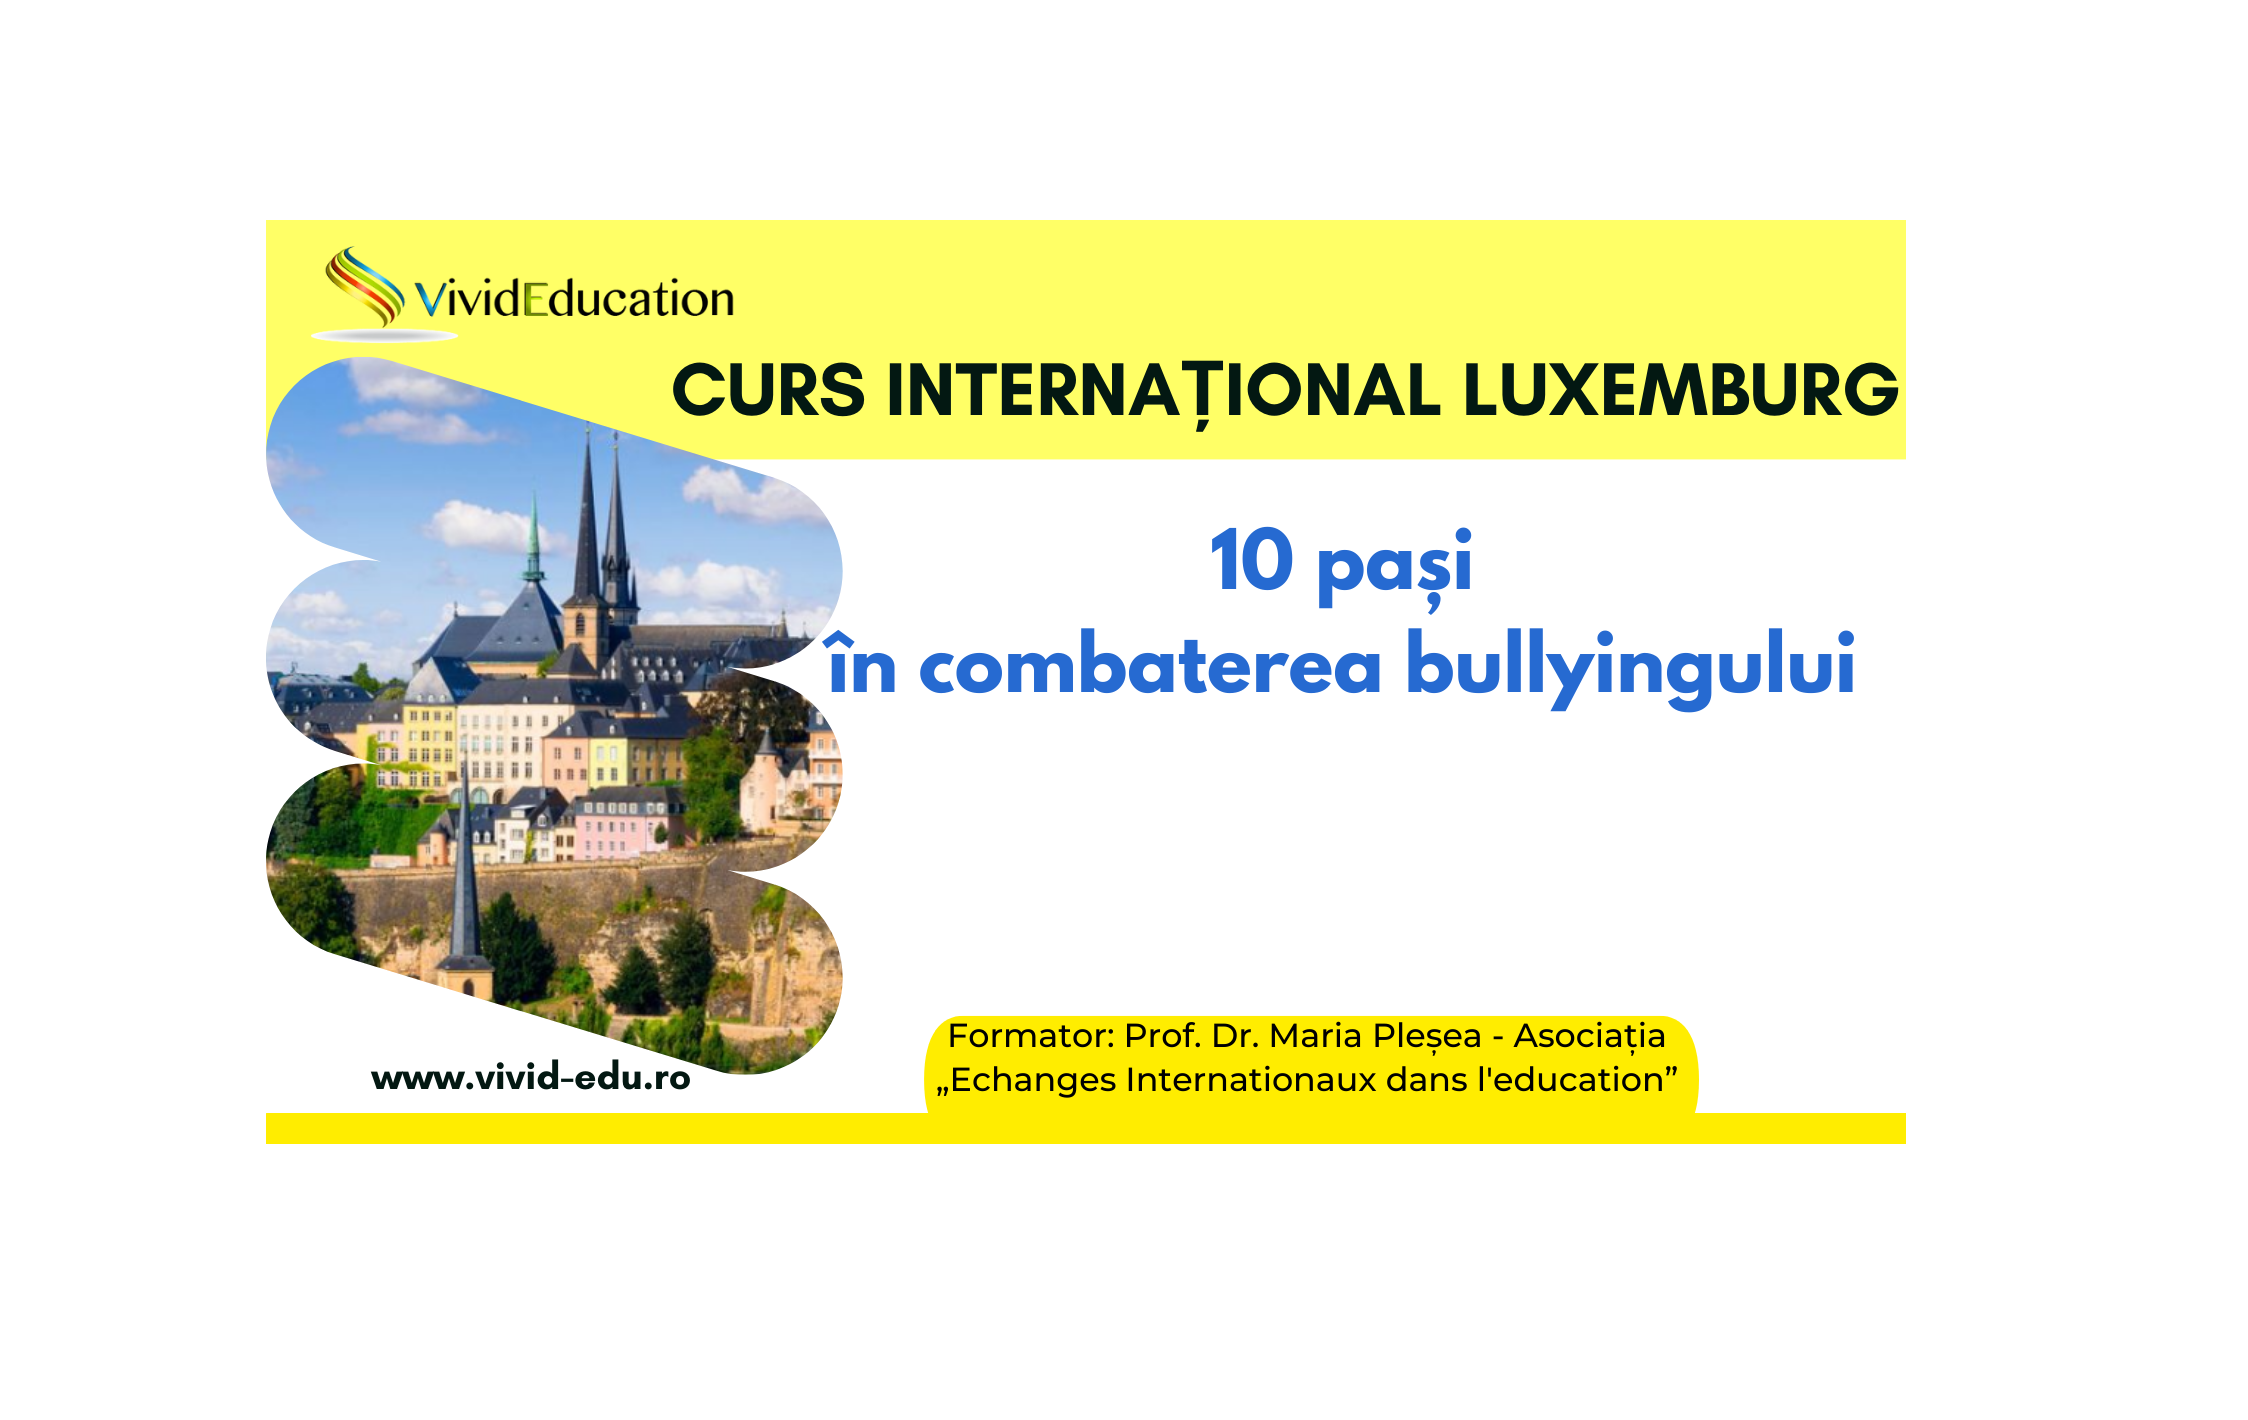 Detalii curs internațional Luxemburg „10 pași în combaterea bullyingului” - 25 oct.